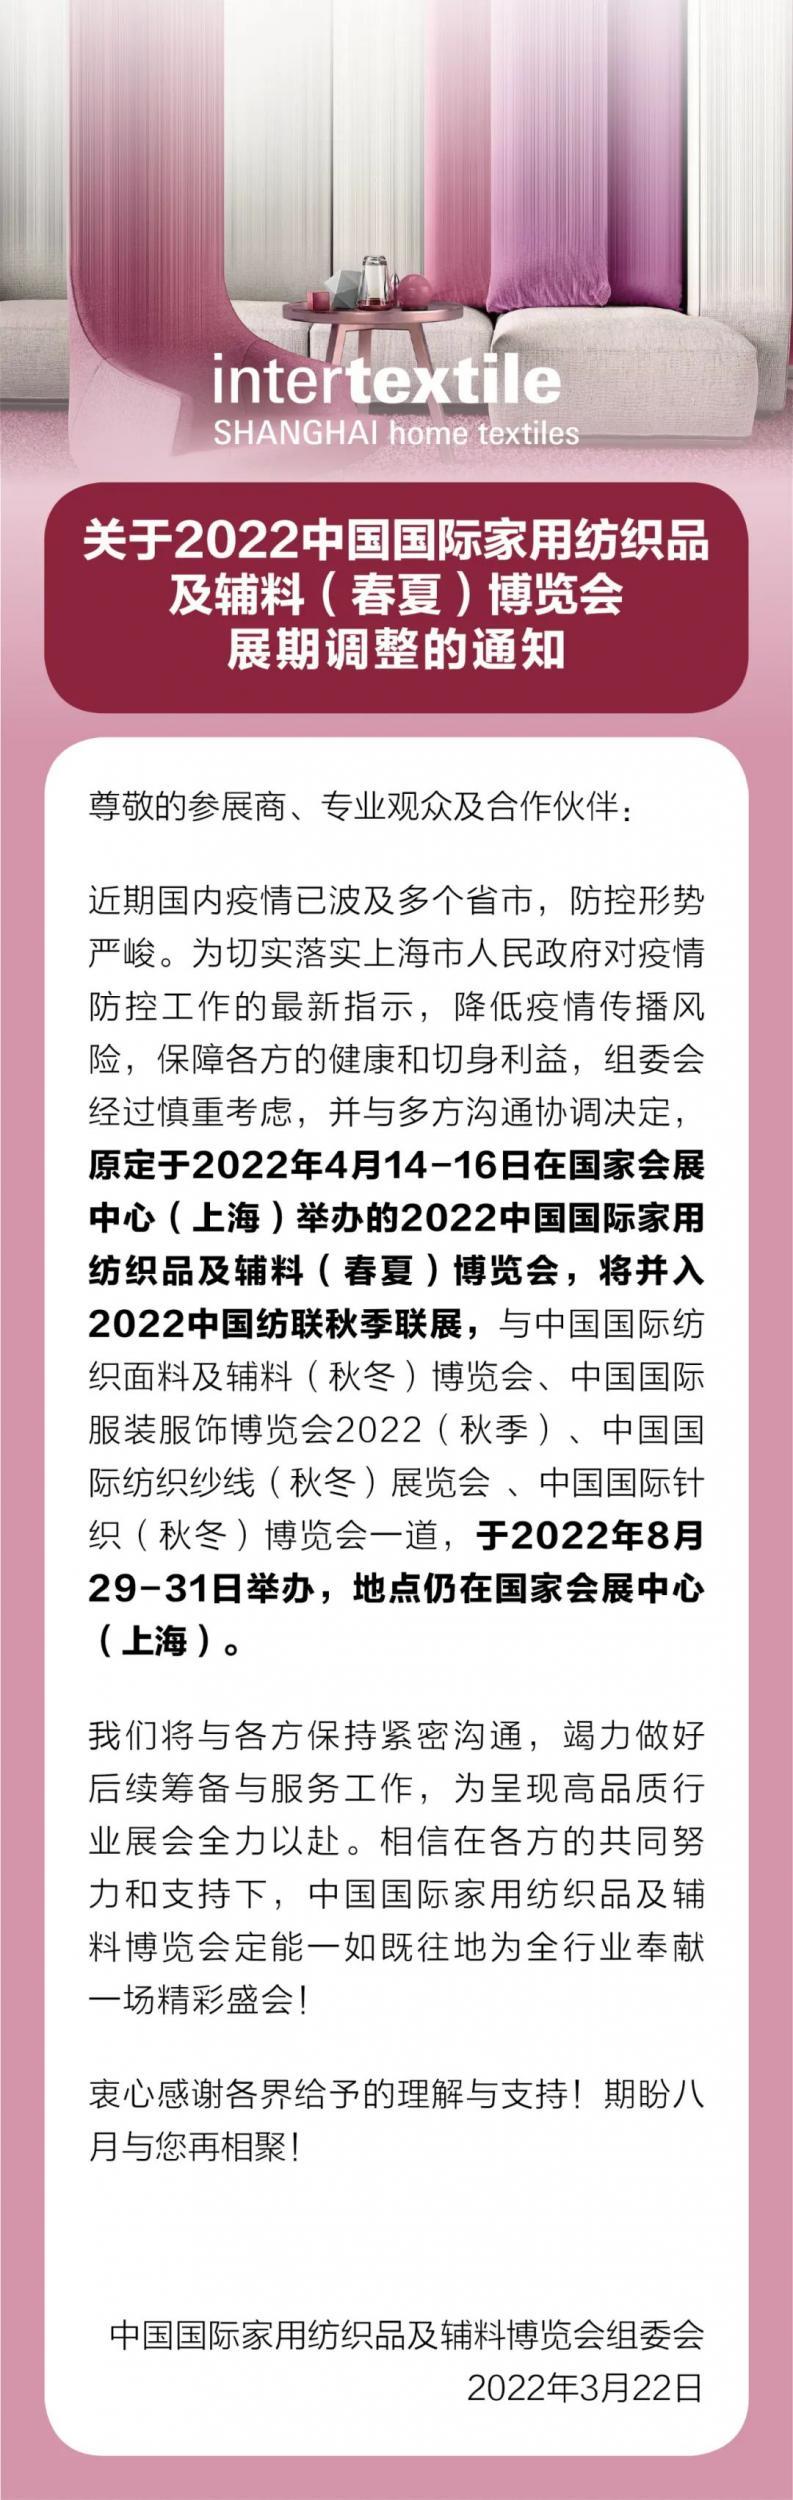 2022中国国际家用纺织品及辅料（春夏）博览会展期调整